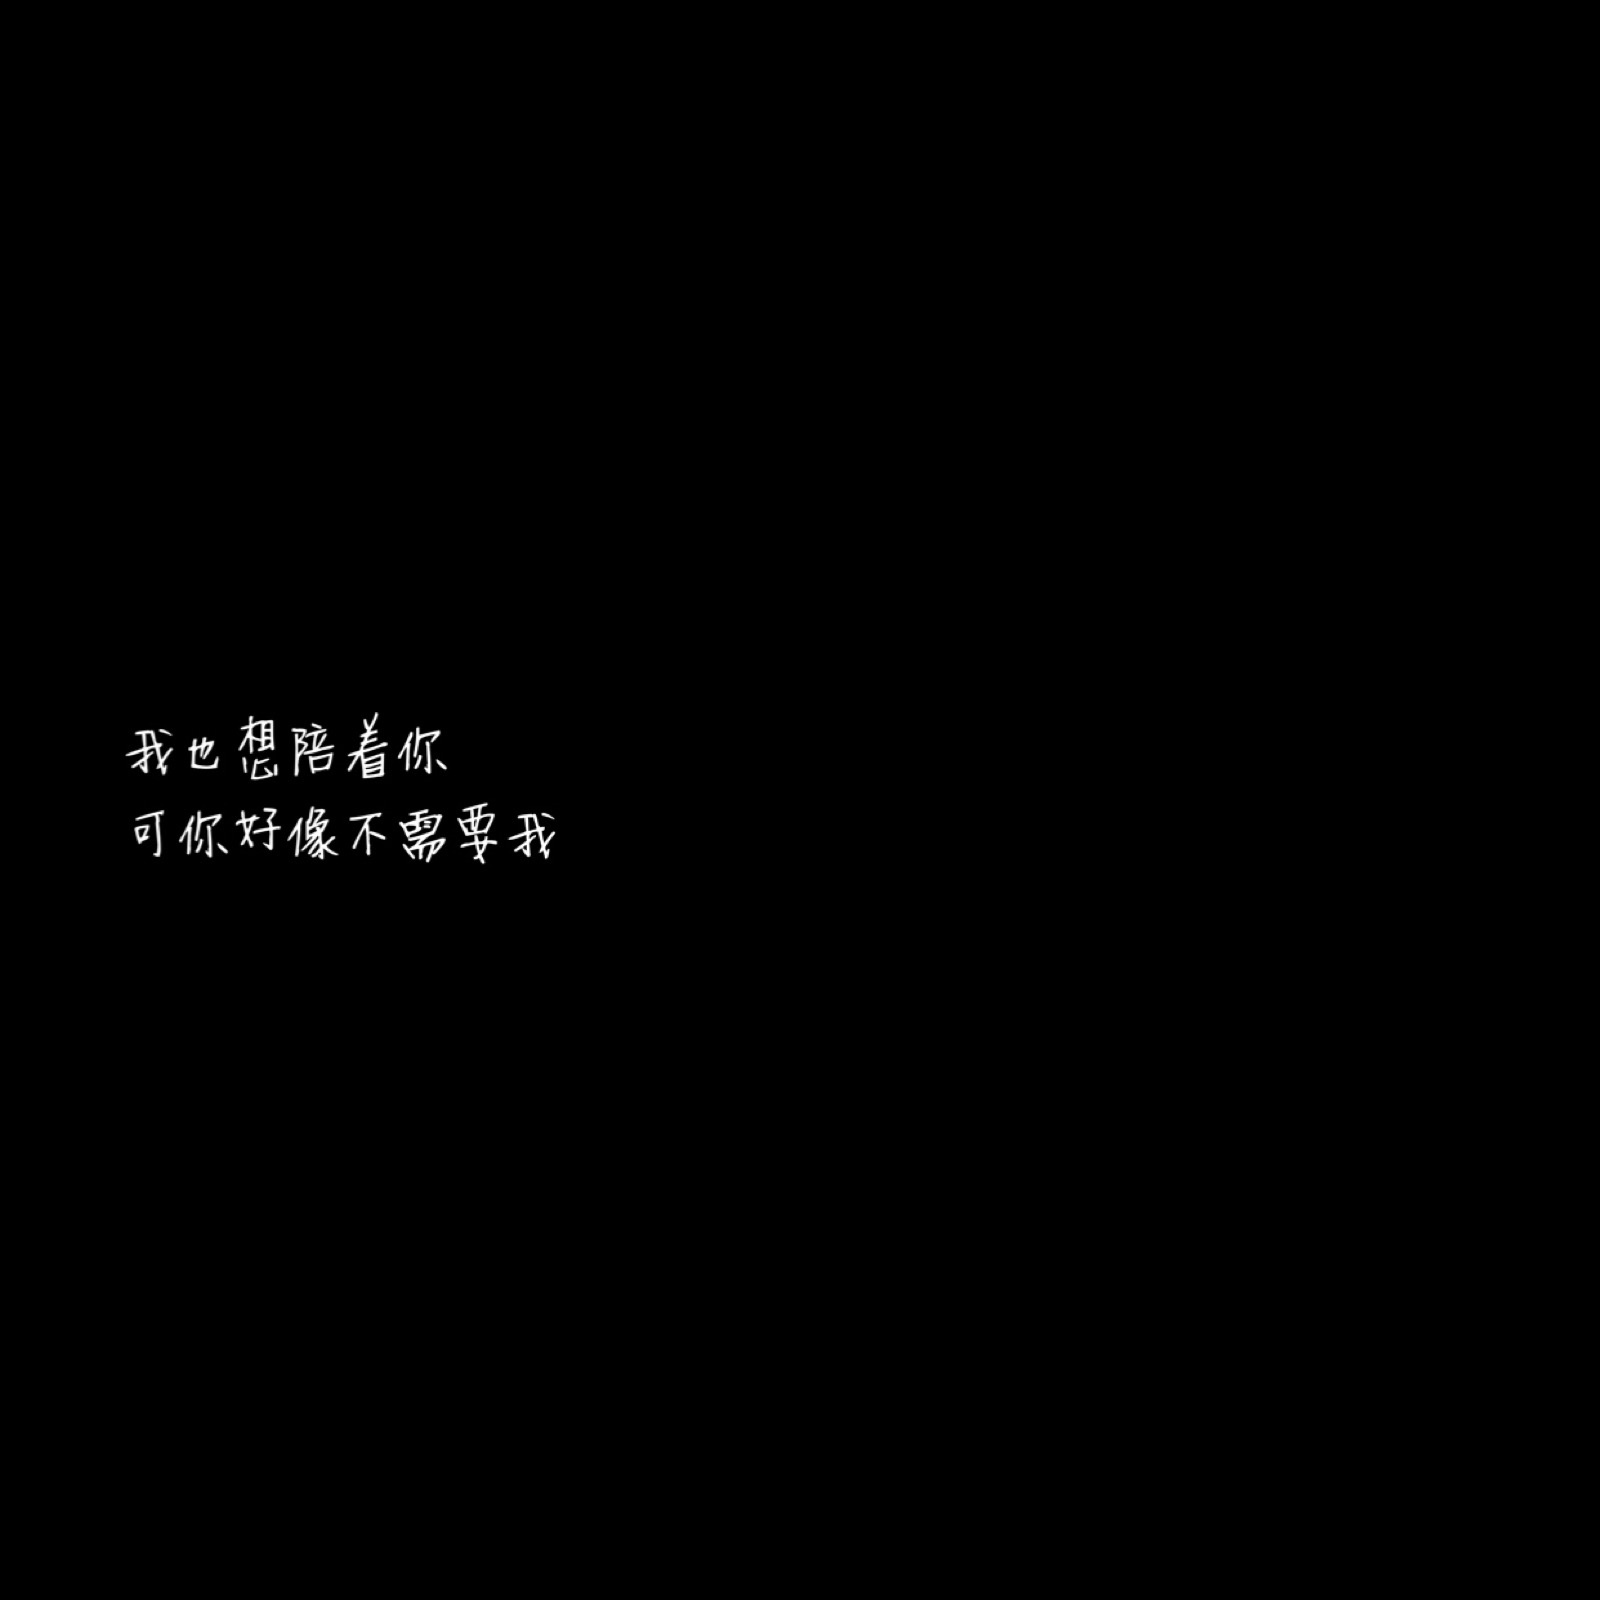 黑底文字背景 古风句子 图片自制 诗晨哥哥… - 堆糖，美图壁纸兴趣社区